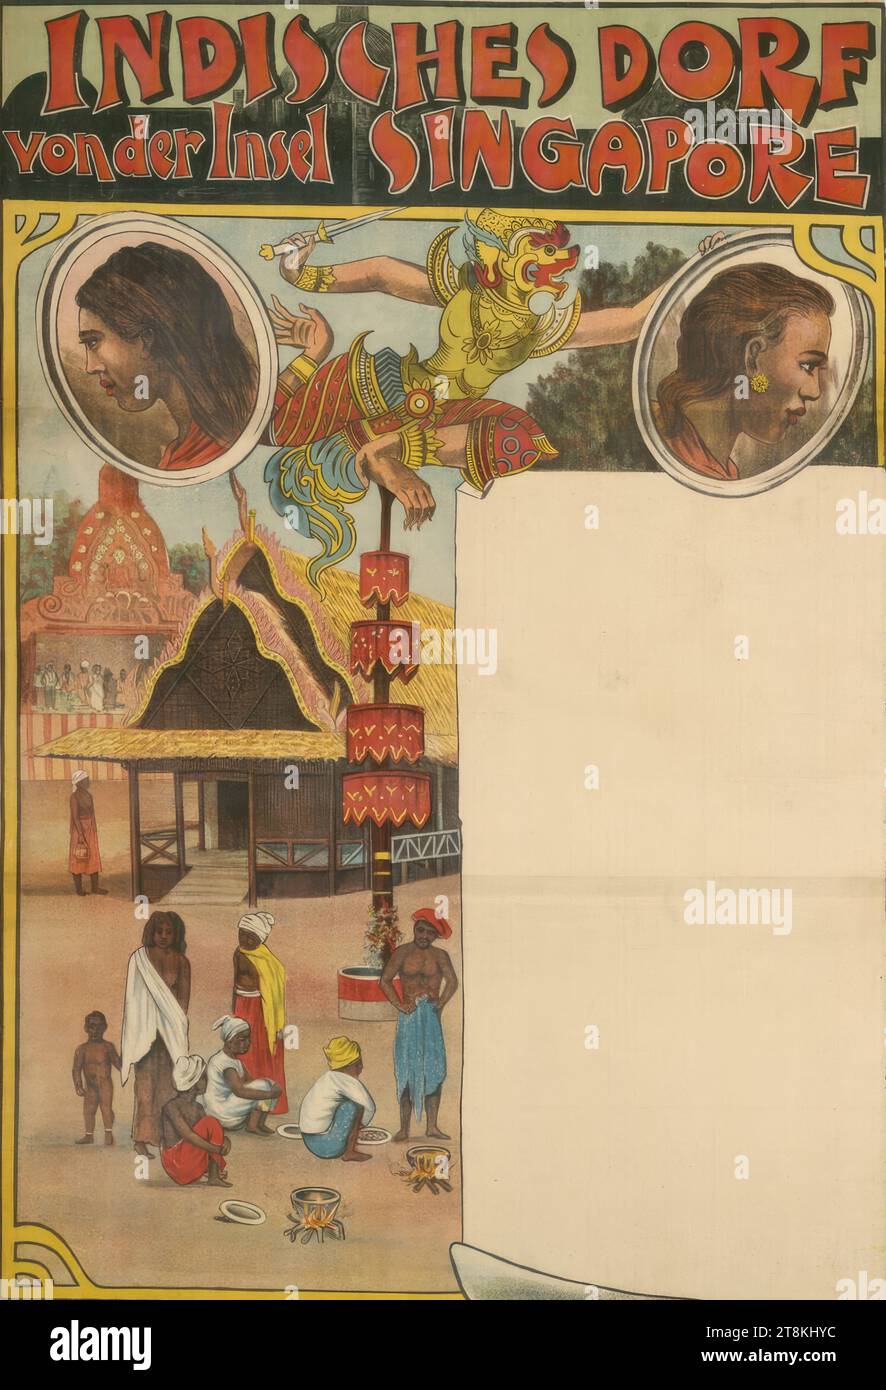 VILLAGE INDIEN au large de l'île de SINGAPOUR, affiche vierge, anonyme, vers 1900, imprimé, lithographie couleur, feuille : 950 mm x 620 mm Banque D'Images